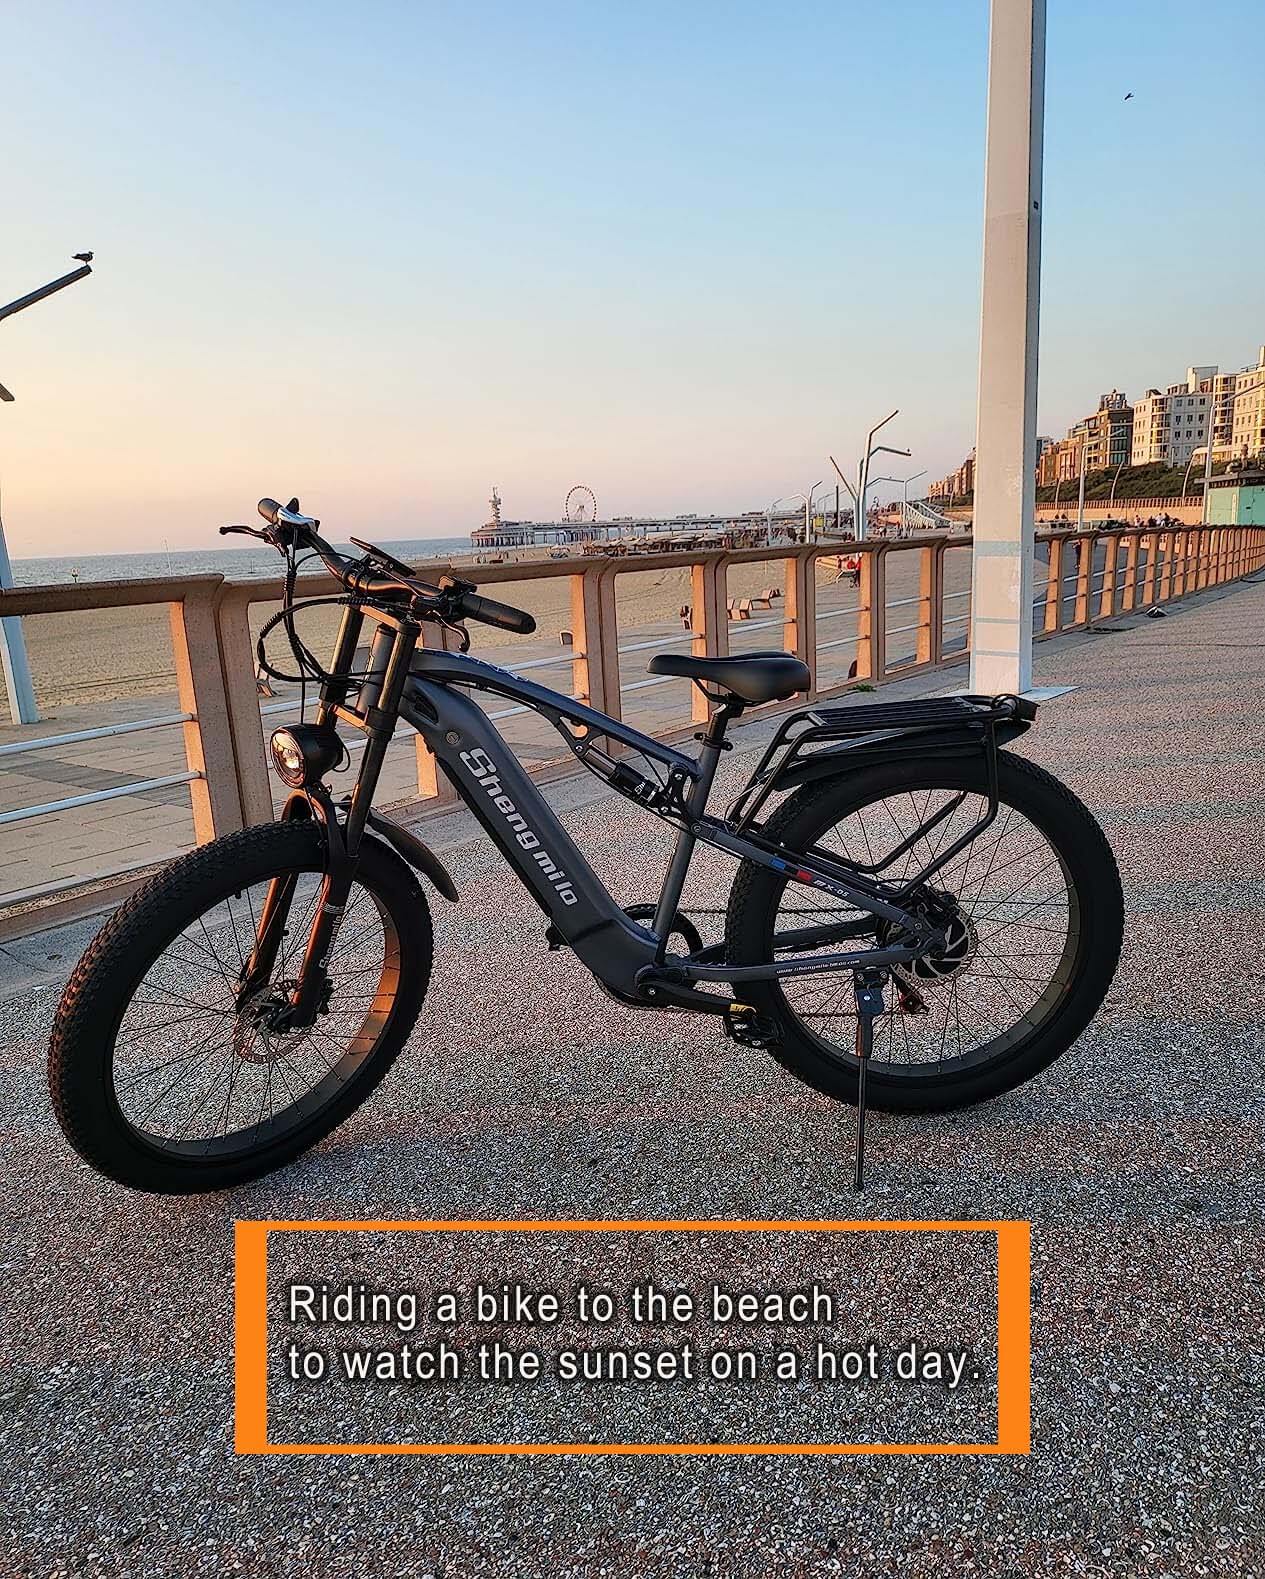 Bei heißem Wetter können Sie mit dem Fahrrad den Sonnenuntergang am Meer genießen